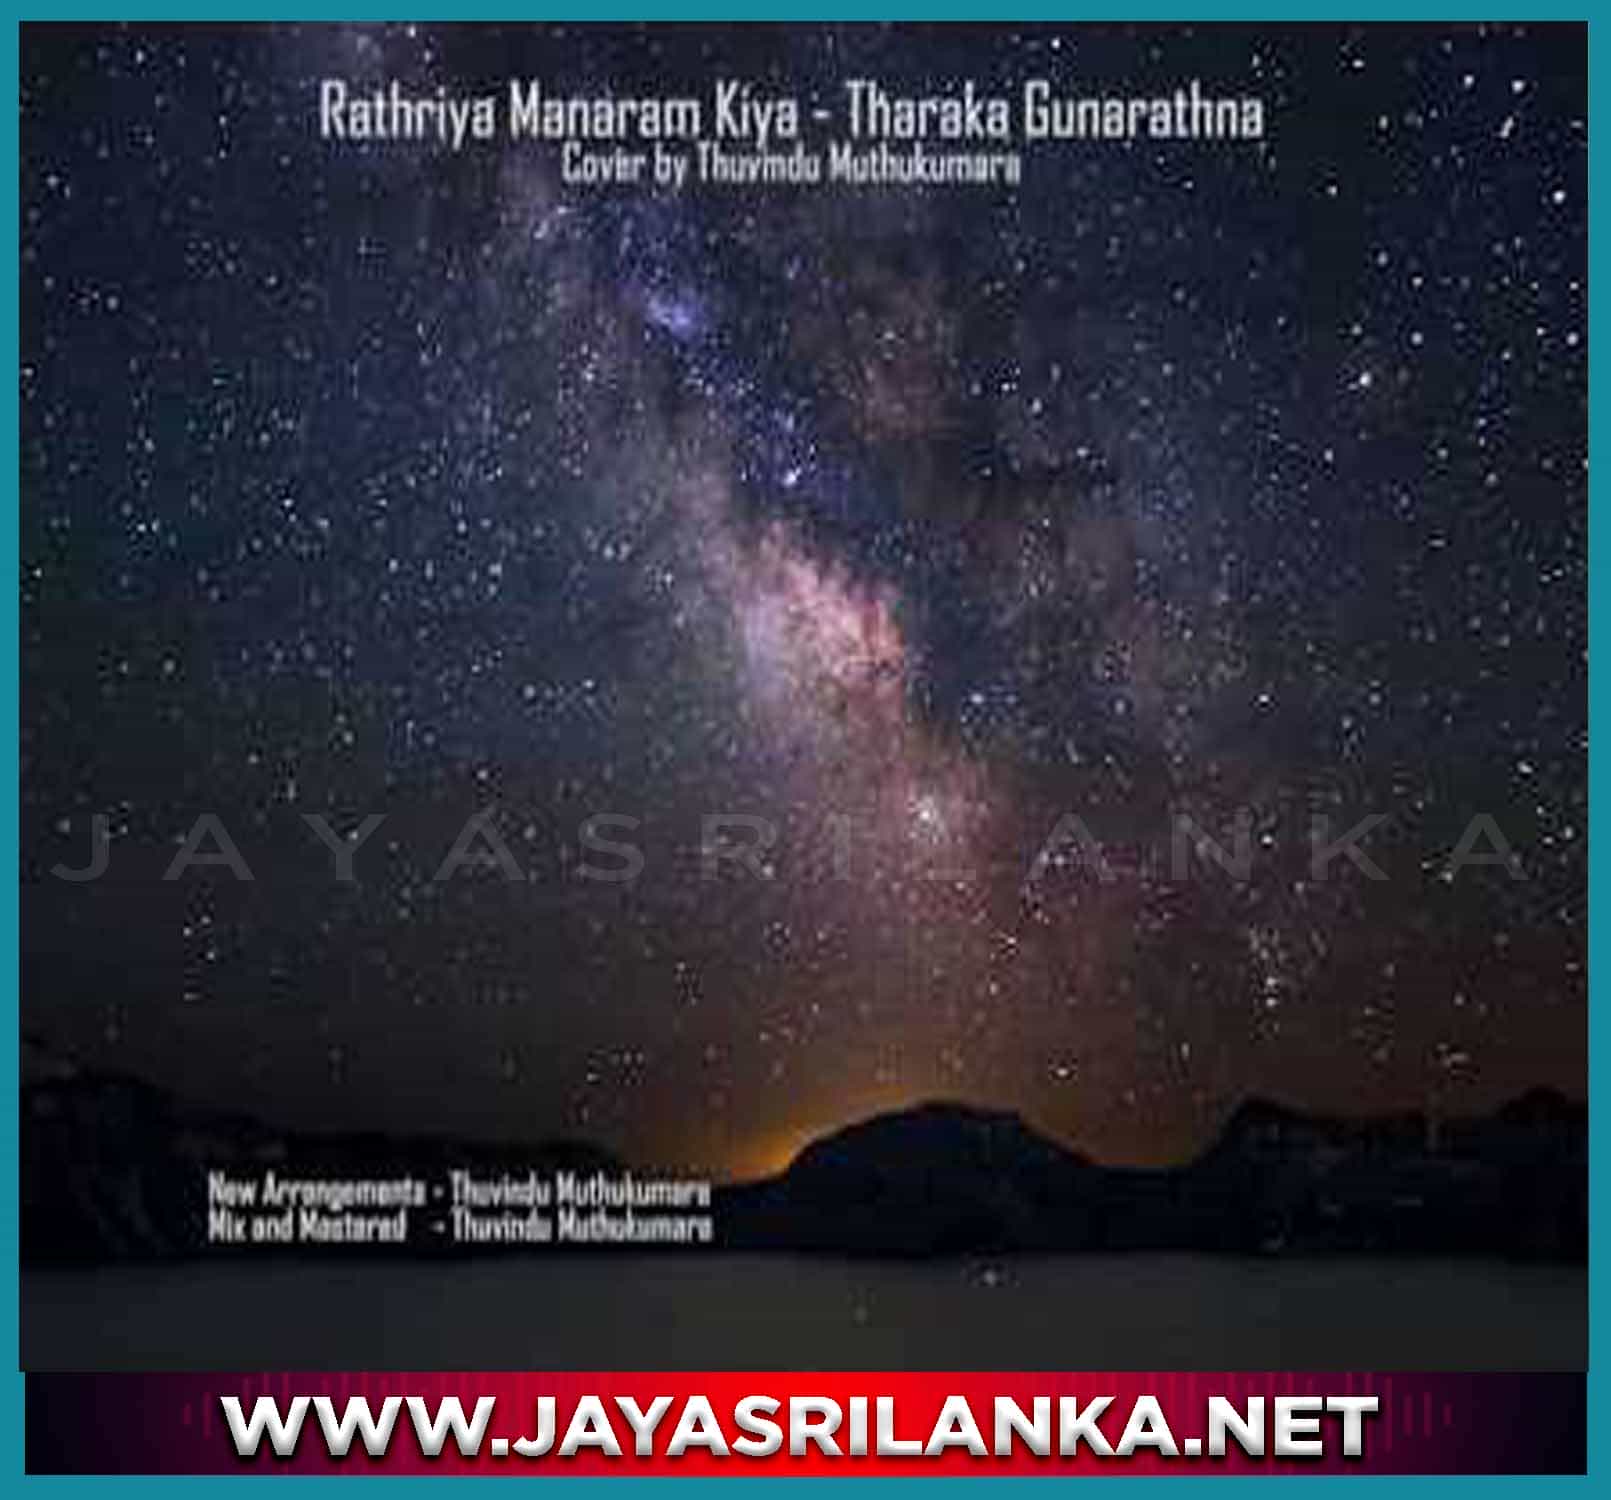 Rathriya Manaram Kiya Cover